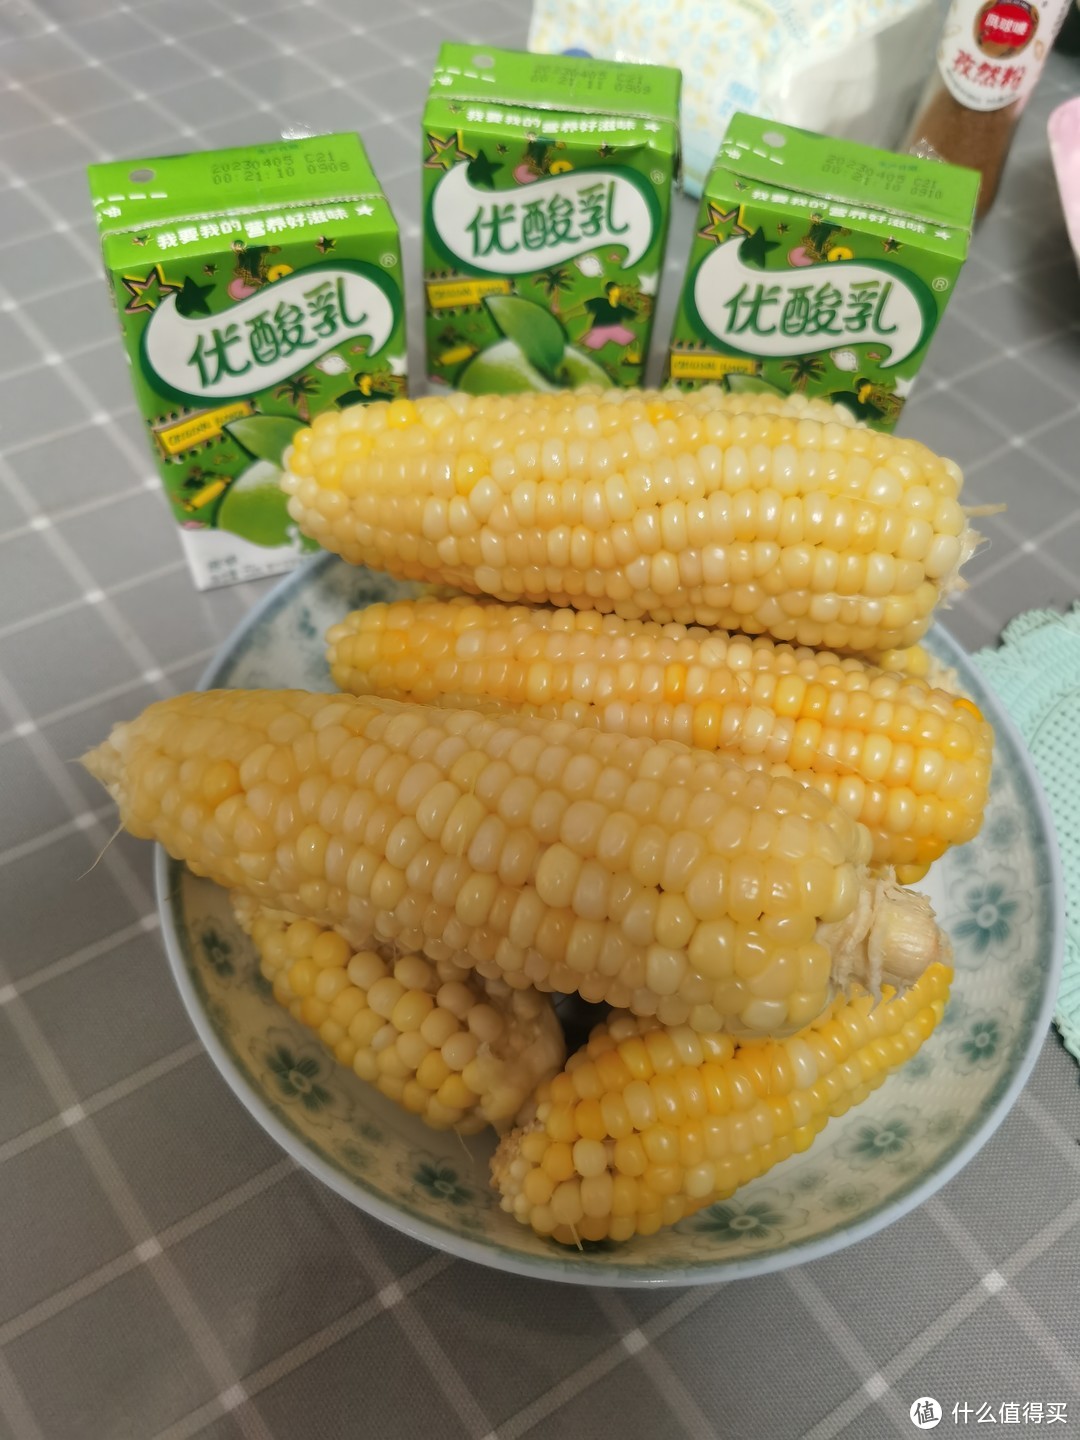 自己种的玉米就是好吃